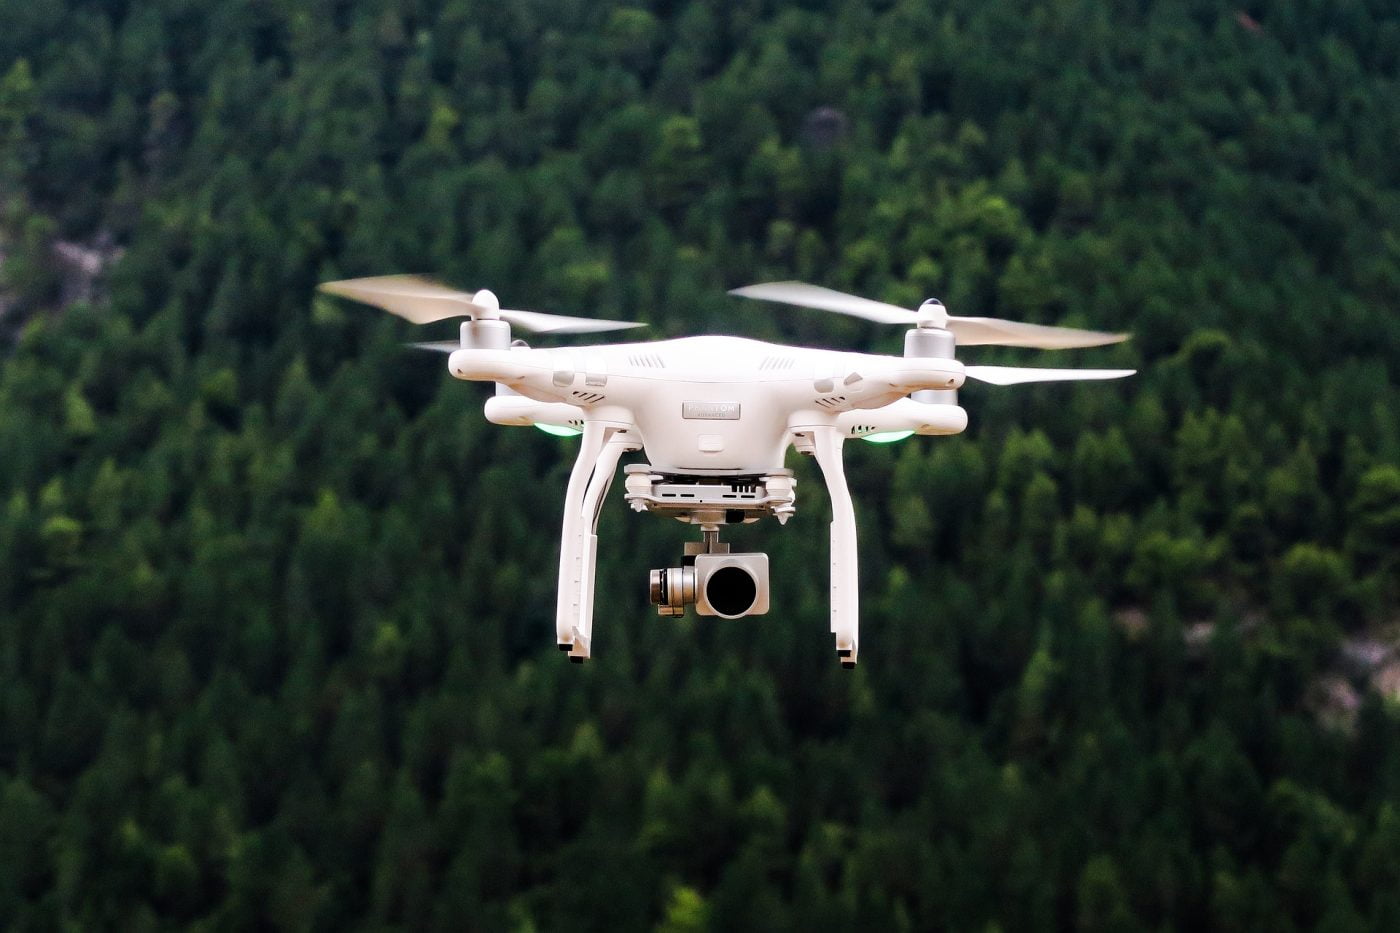 Weiße Drohne in der Luft, im Hintergrund ist ein Wald mit viele Bäumen zu erkennen. Die Drohne hat noch eine kleine Kamera.